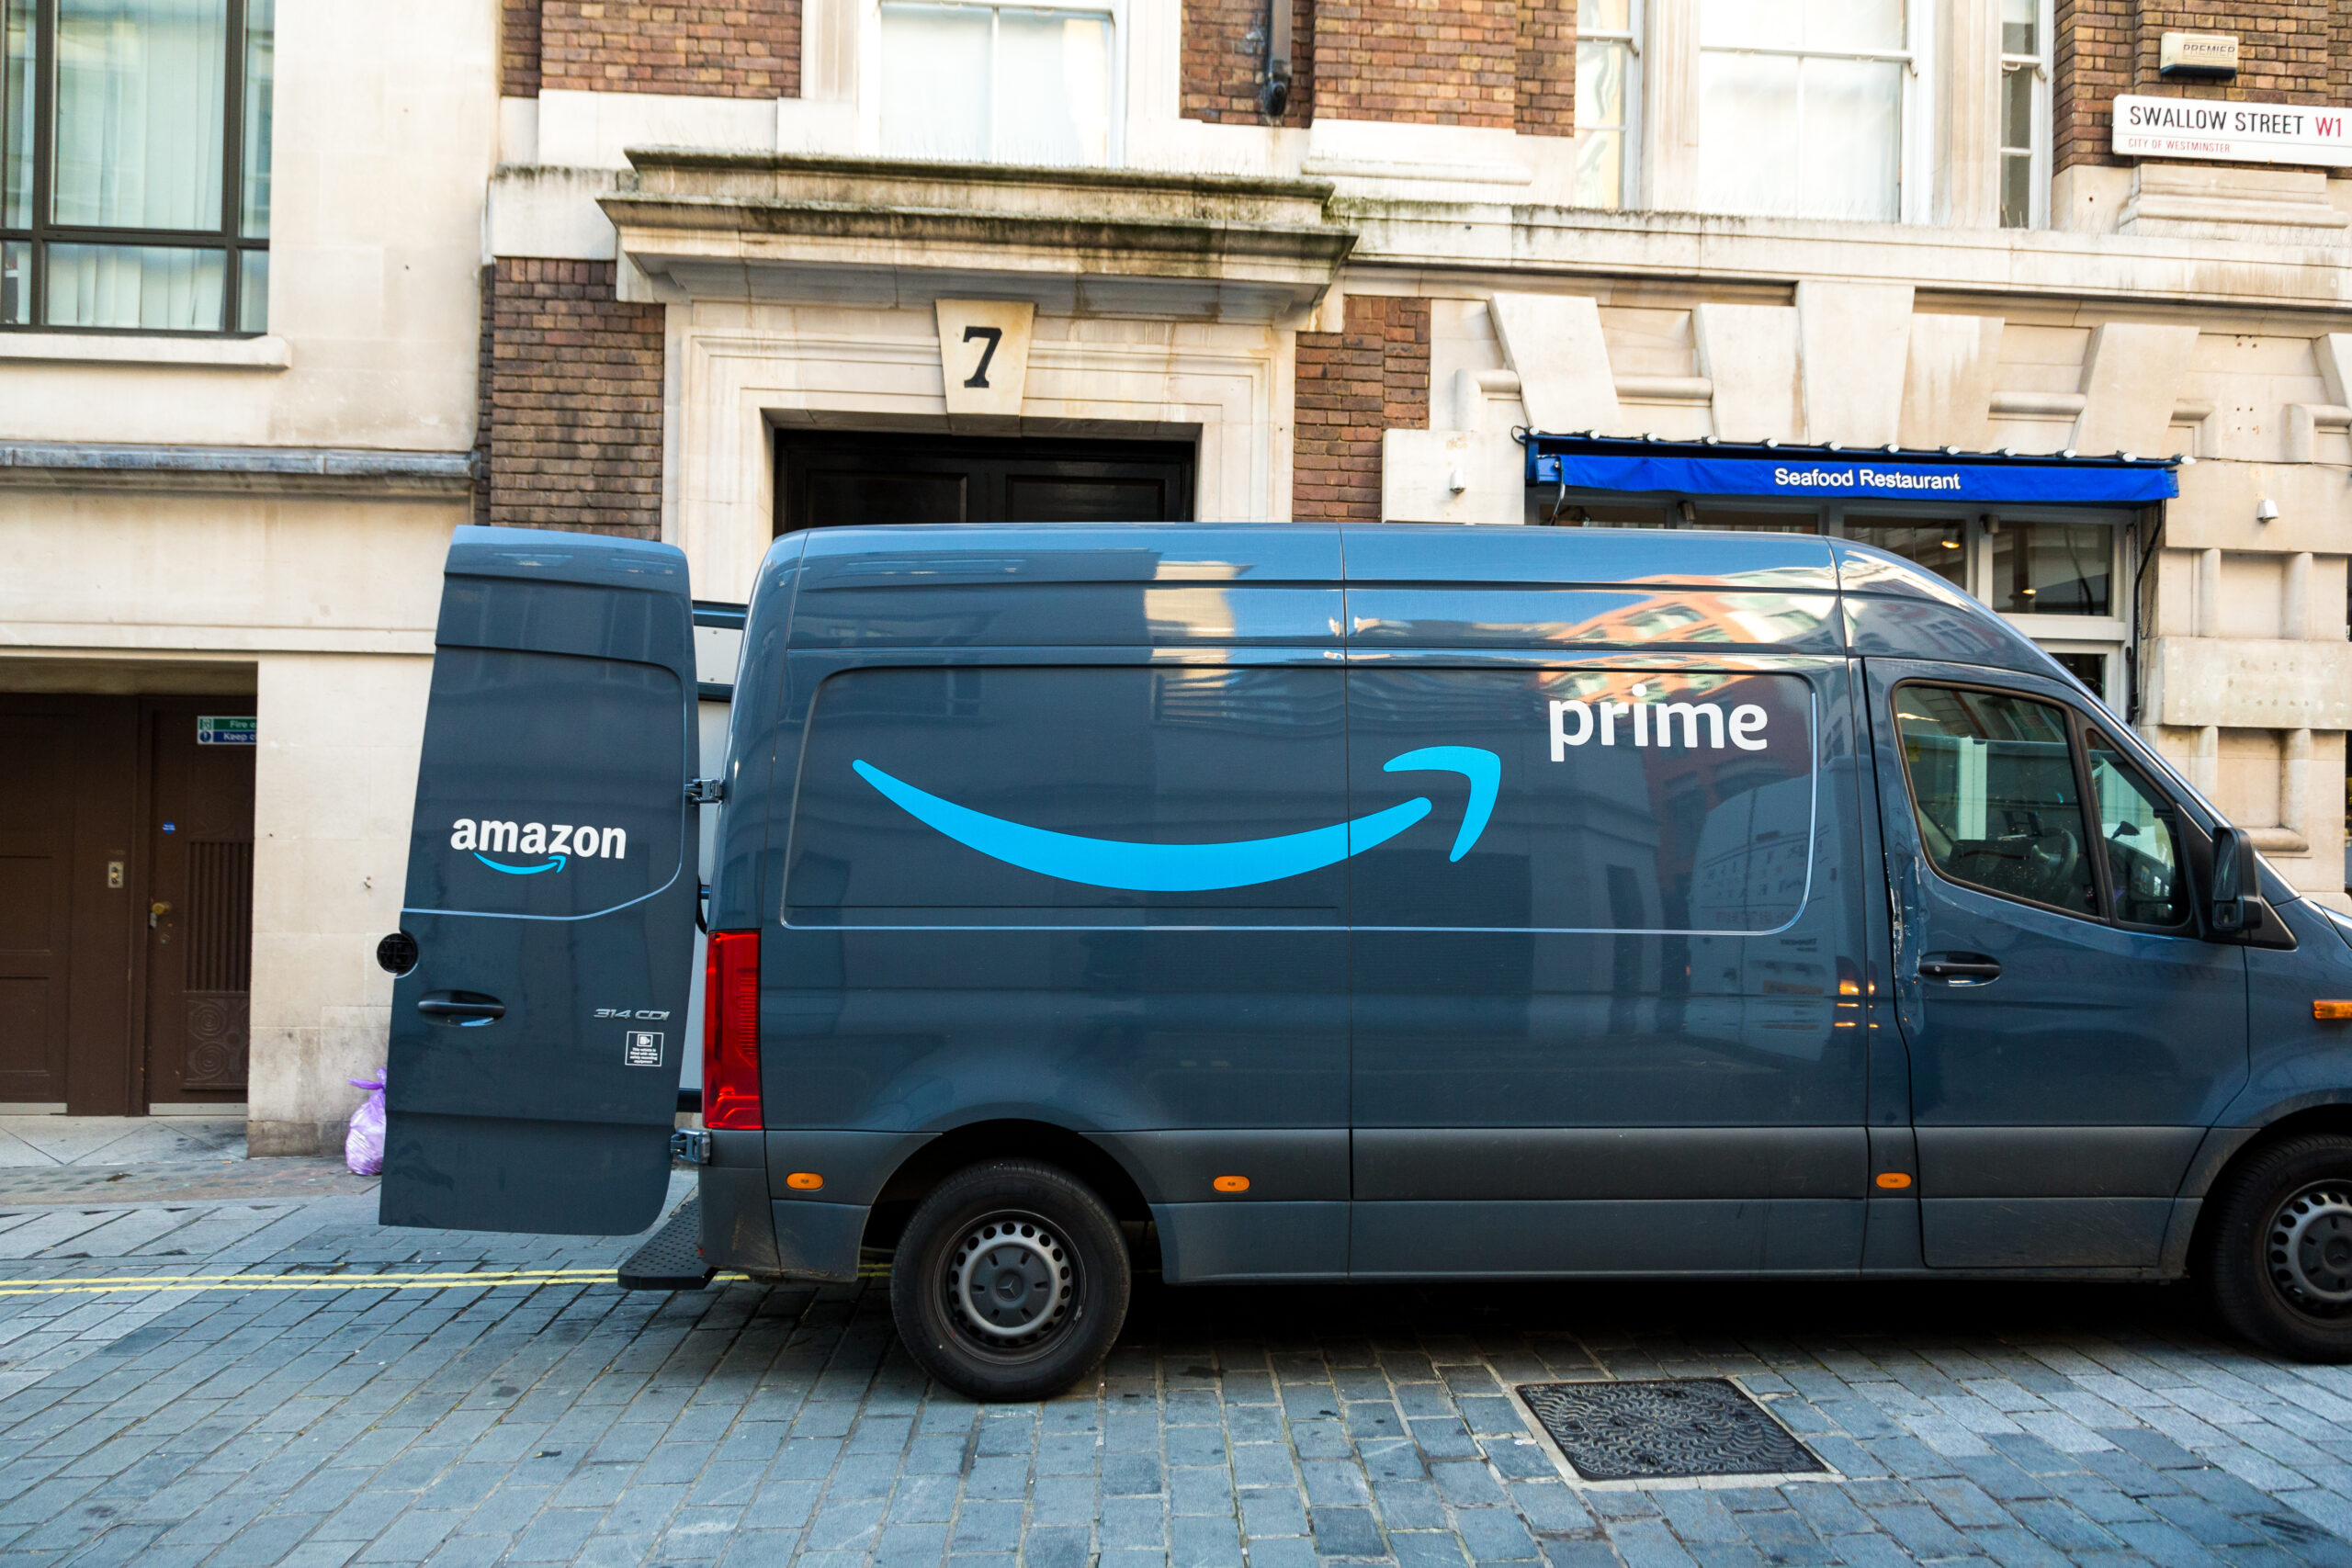 Amazon Prime delivery van on London city street